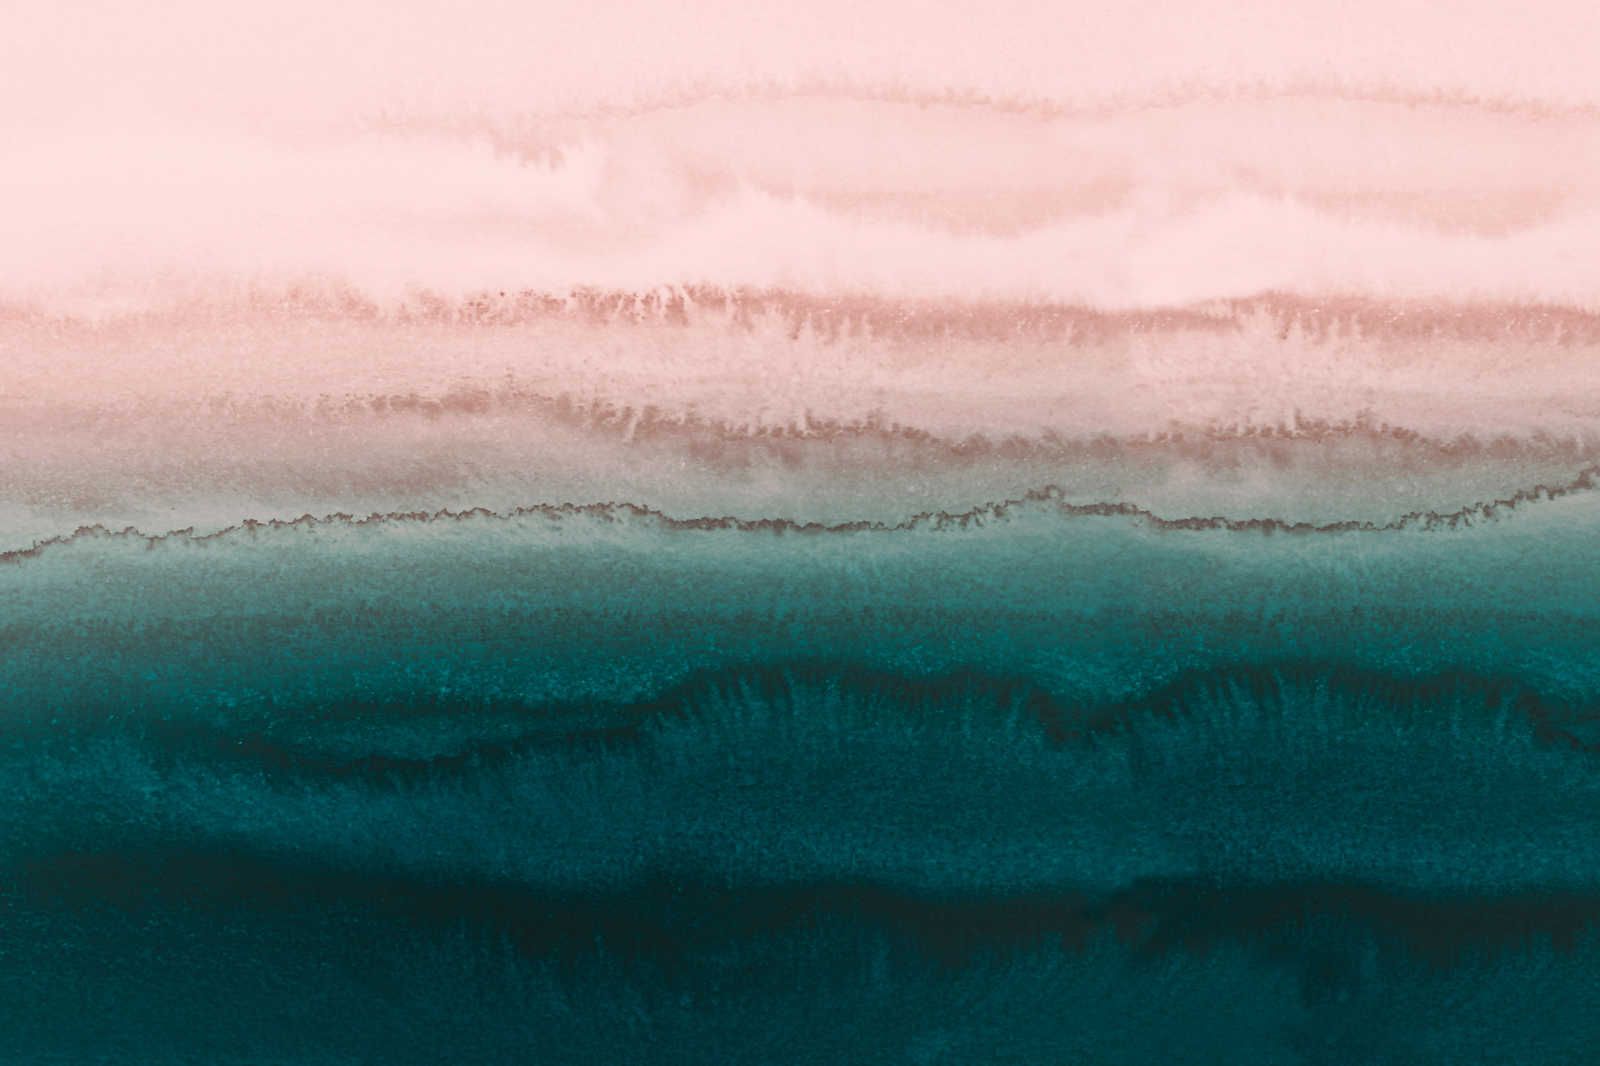             Pittura su tela con acquerello astratto Tides - 0,90 m x 0,60 m
        